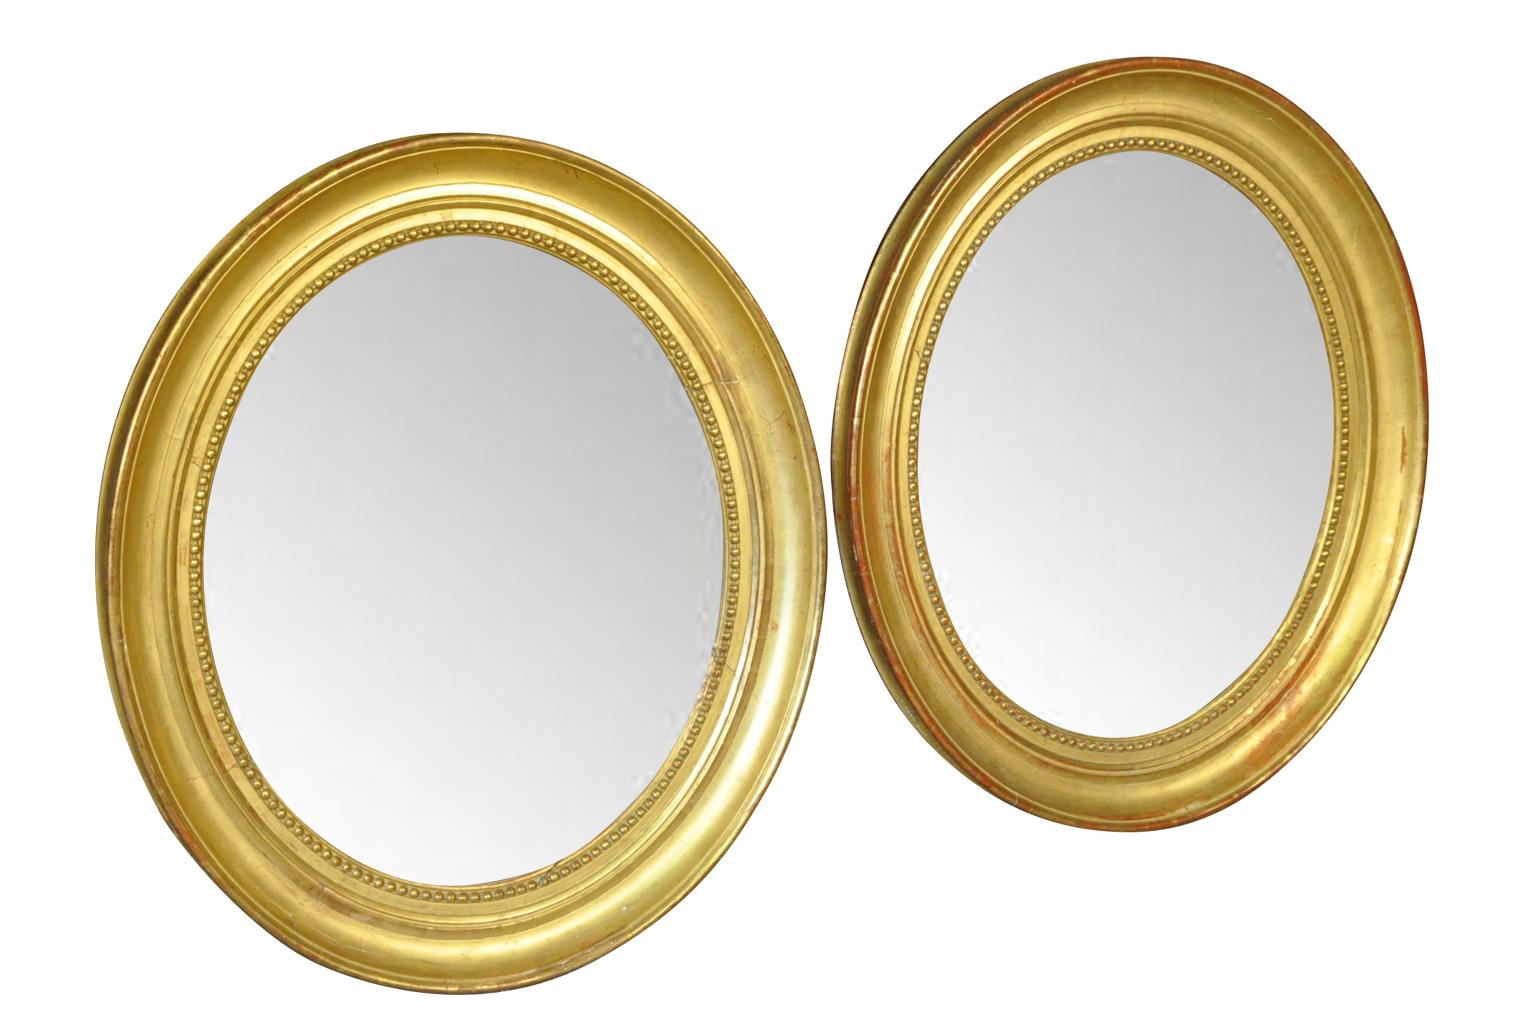 Ein atemberaubendes Paar französischer ovaler Spiegel aus der Mitte des 19. Jahrhunderts der Louis-Philippe-Periode aus vergoldetem Holz. Die Spiegel haben ihr ursprüngliches Quecksilberglas behalten. Sehr elegant mit schöner Patina.